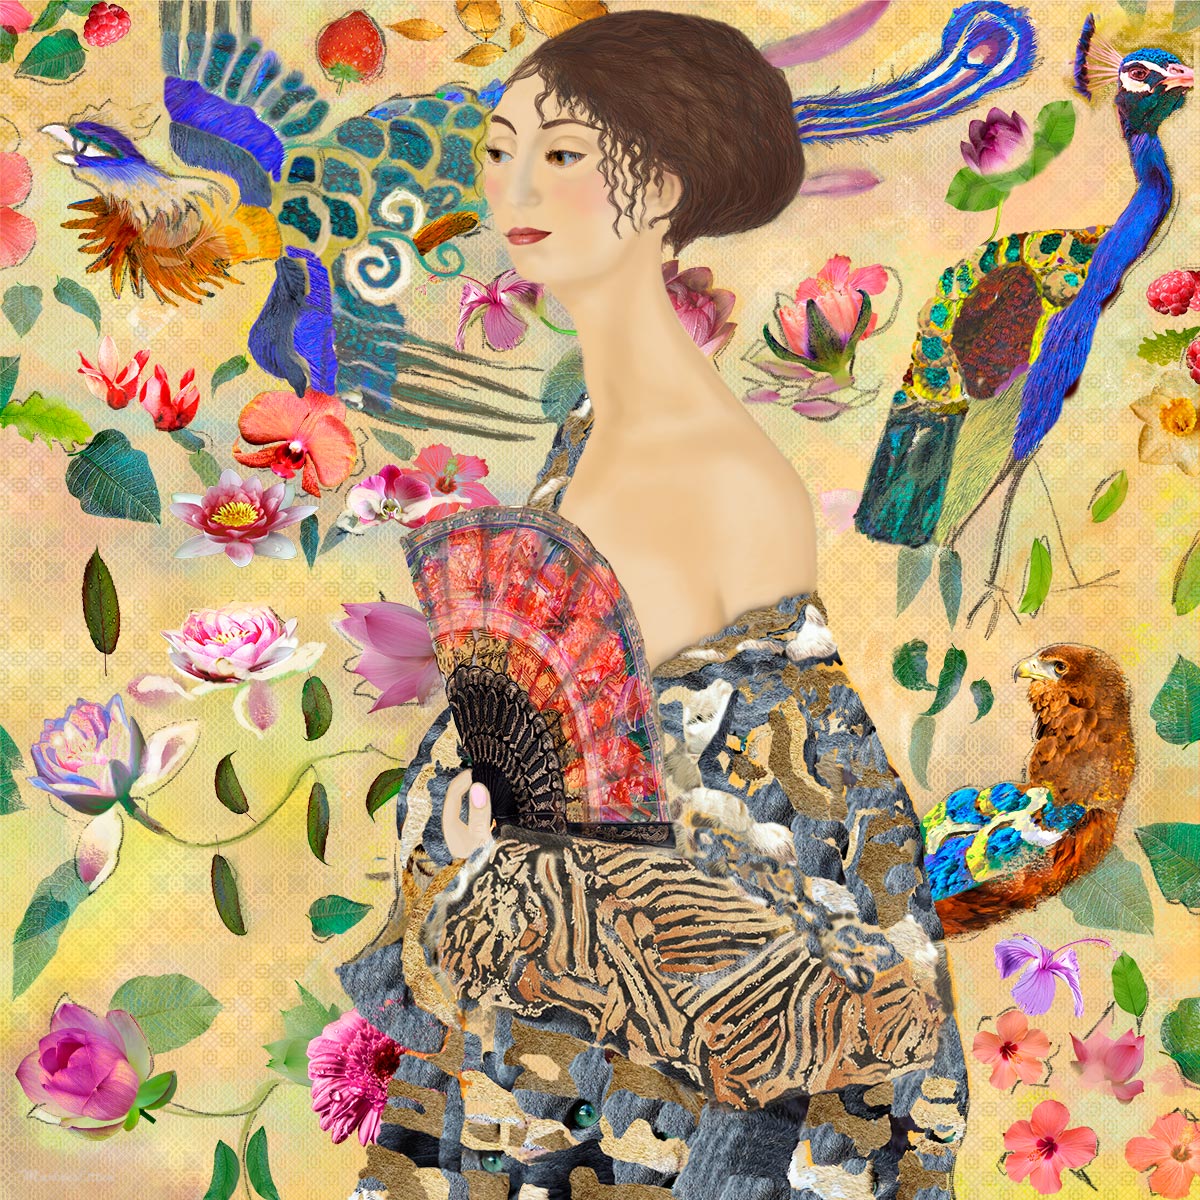 digitaal kunstwerk van Marloes Otten met een vrouw tegen gele achtergrond met art deco motief, bloemen en vogels. Het schilderij is gebaseerd op een schilderij van Gustav Klimt.